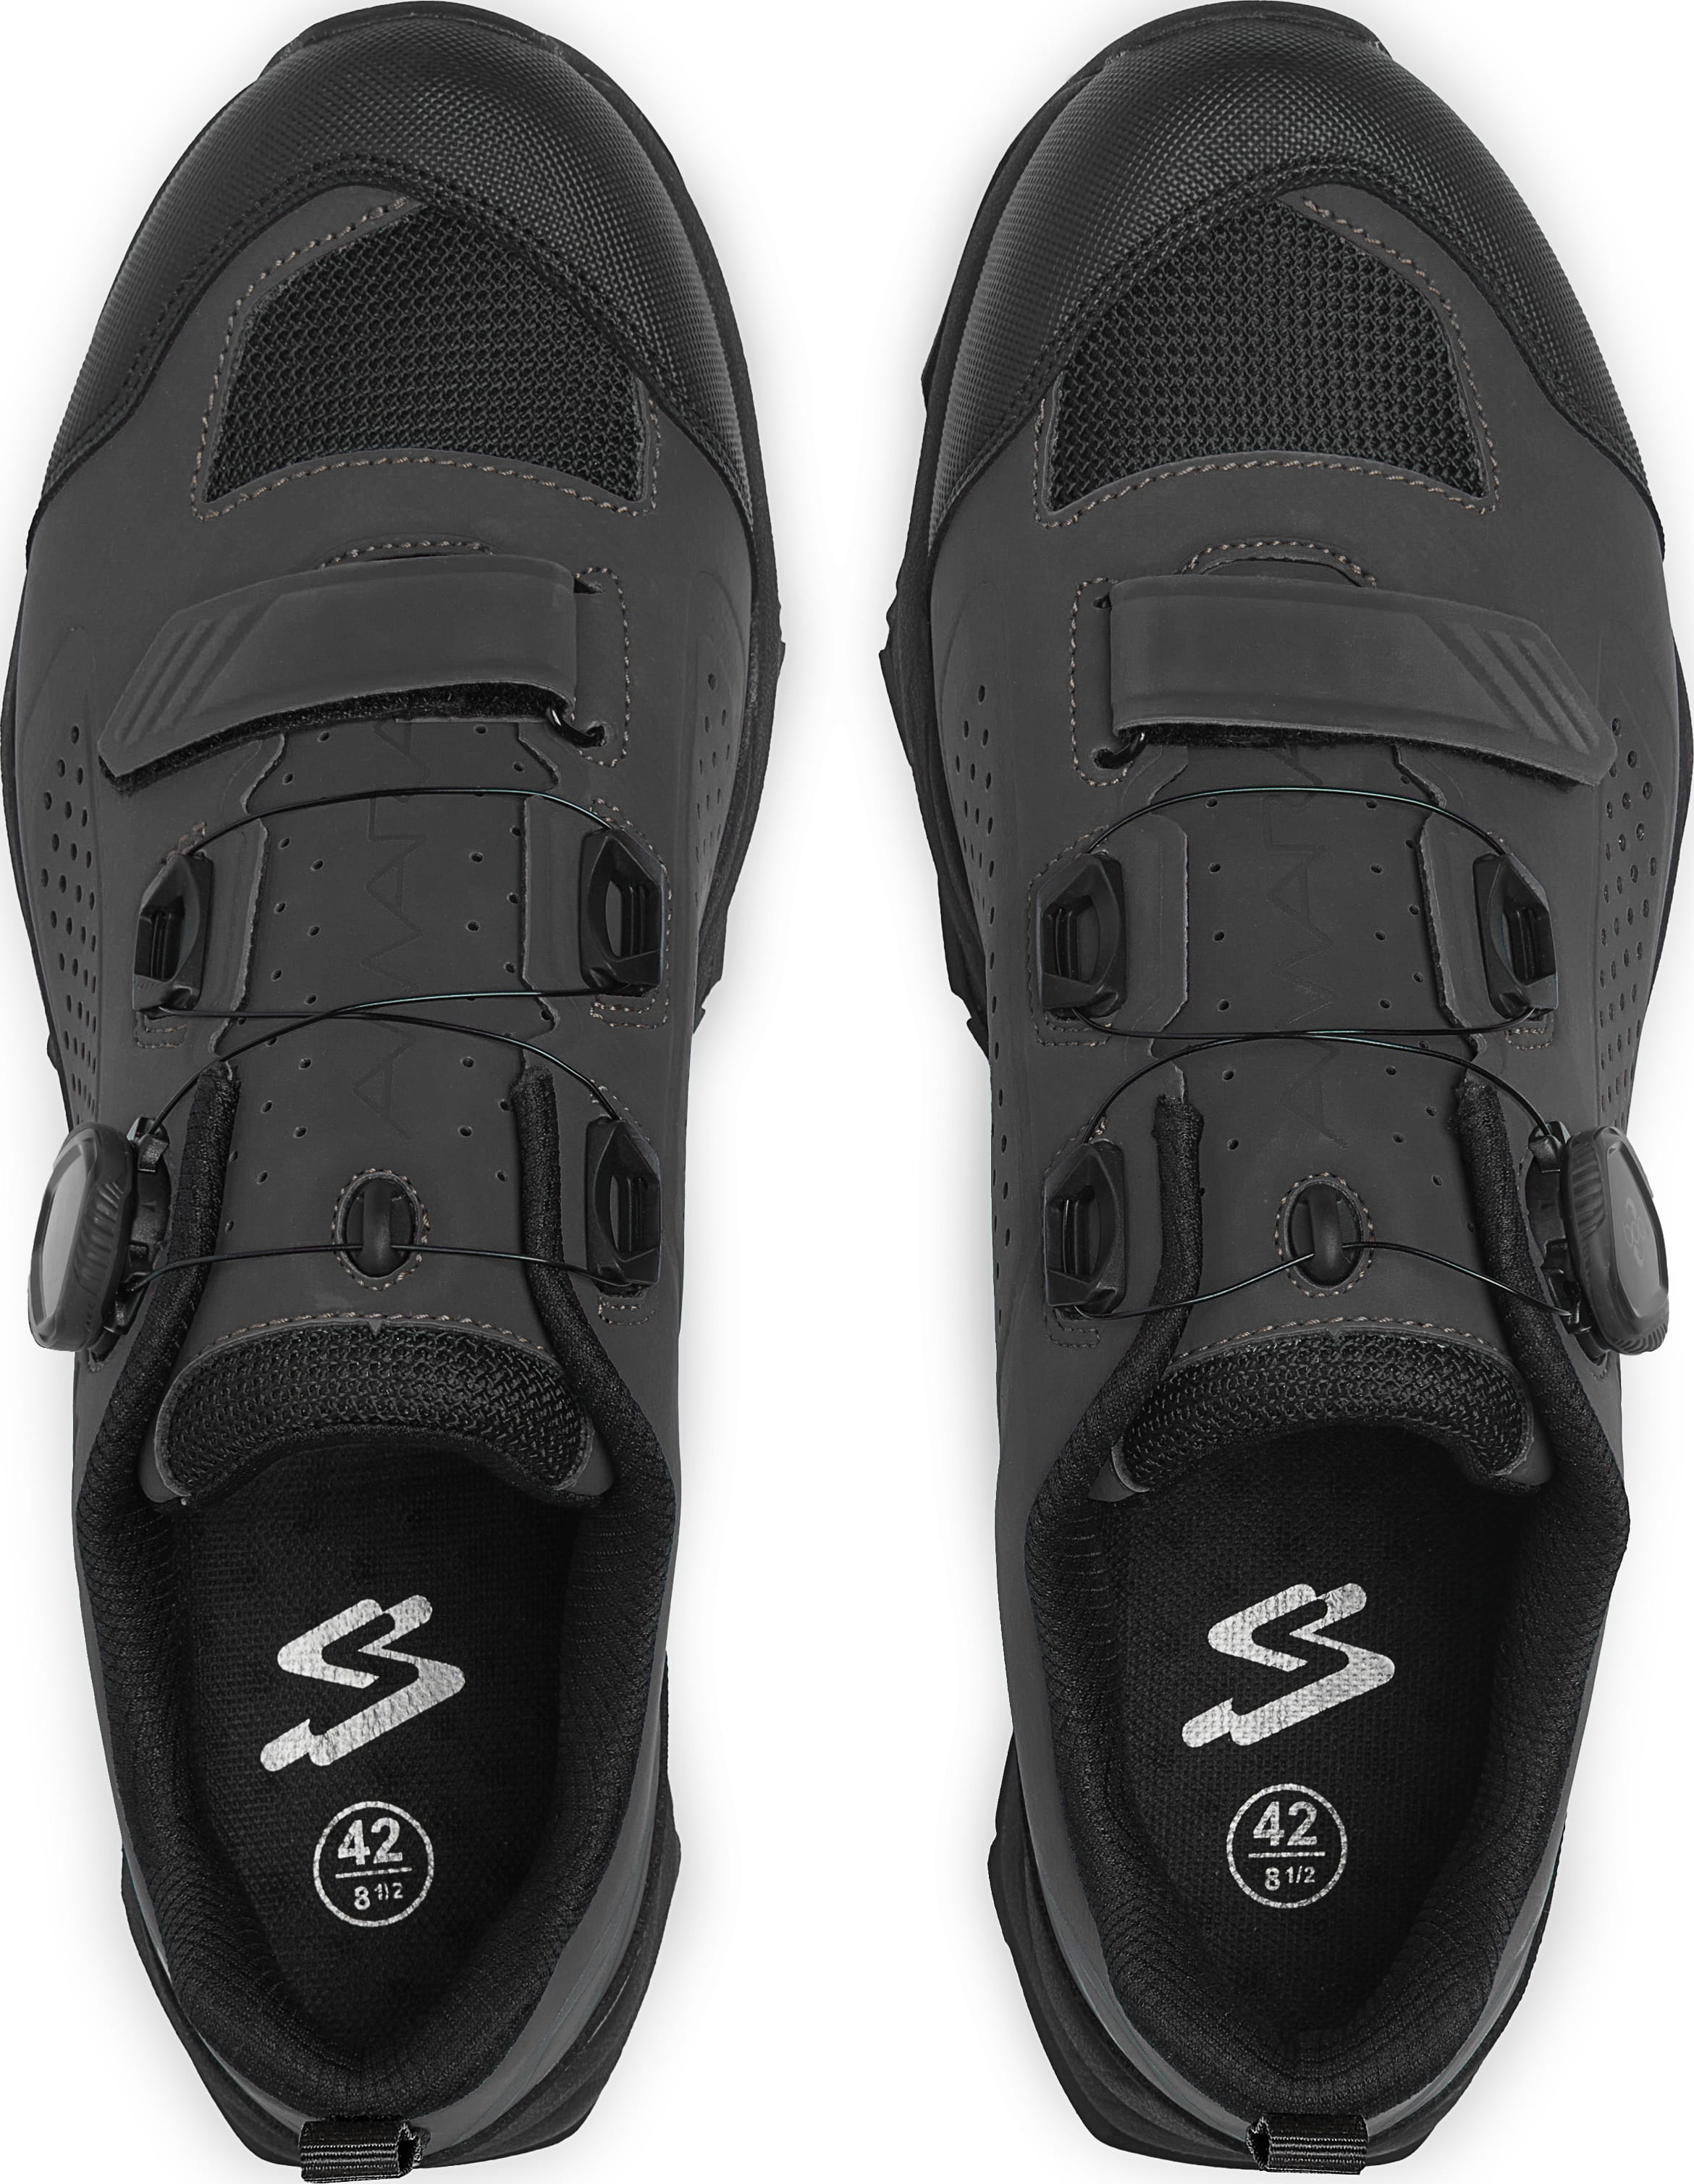 Взуття Spiuk Amara M2V MTB розмір UK 11,5 (46 283мм) чорне фото 2